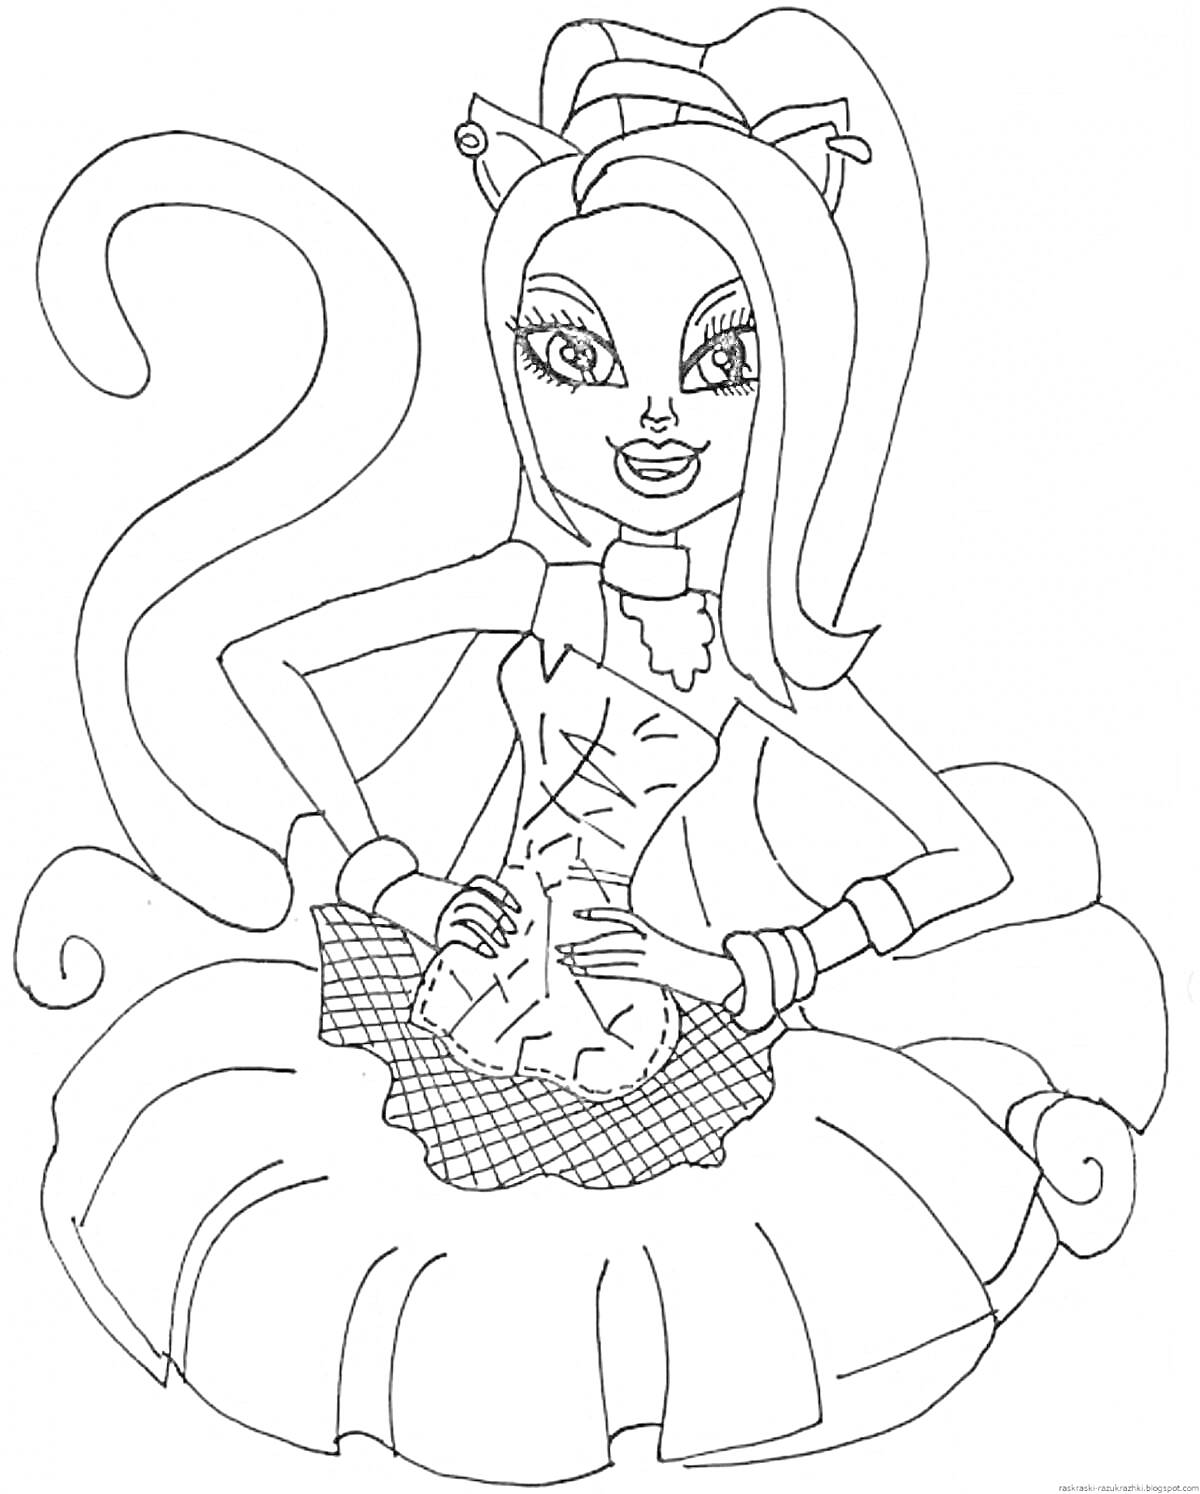 Раскраска Девушка из Монстер Хай с кошачьим хвостом, бантиком на голове и платьем с юбкой и корсетом